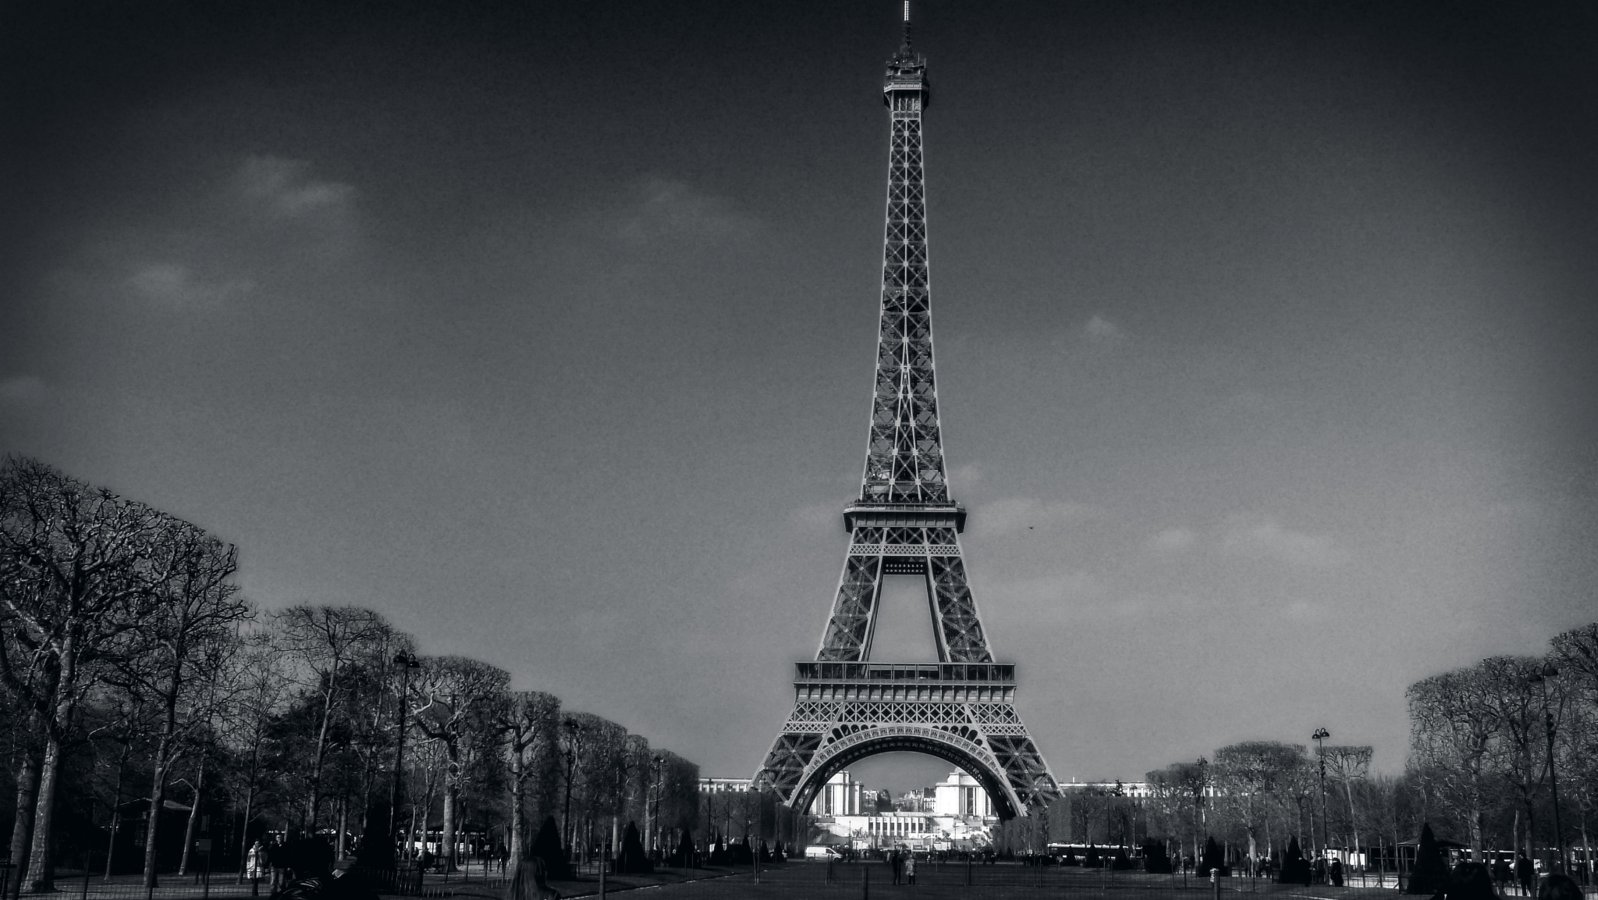 Tour Eiffel - Parc du Champ-de-Mars